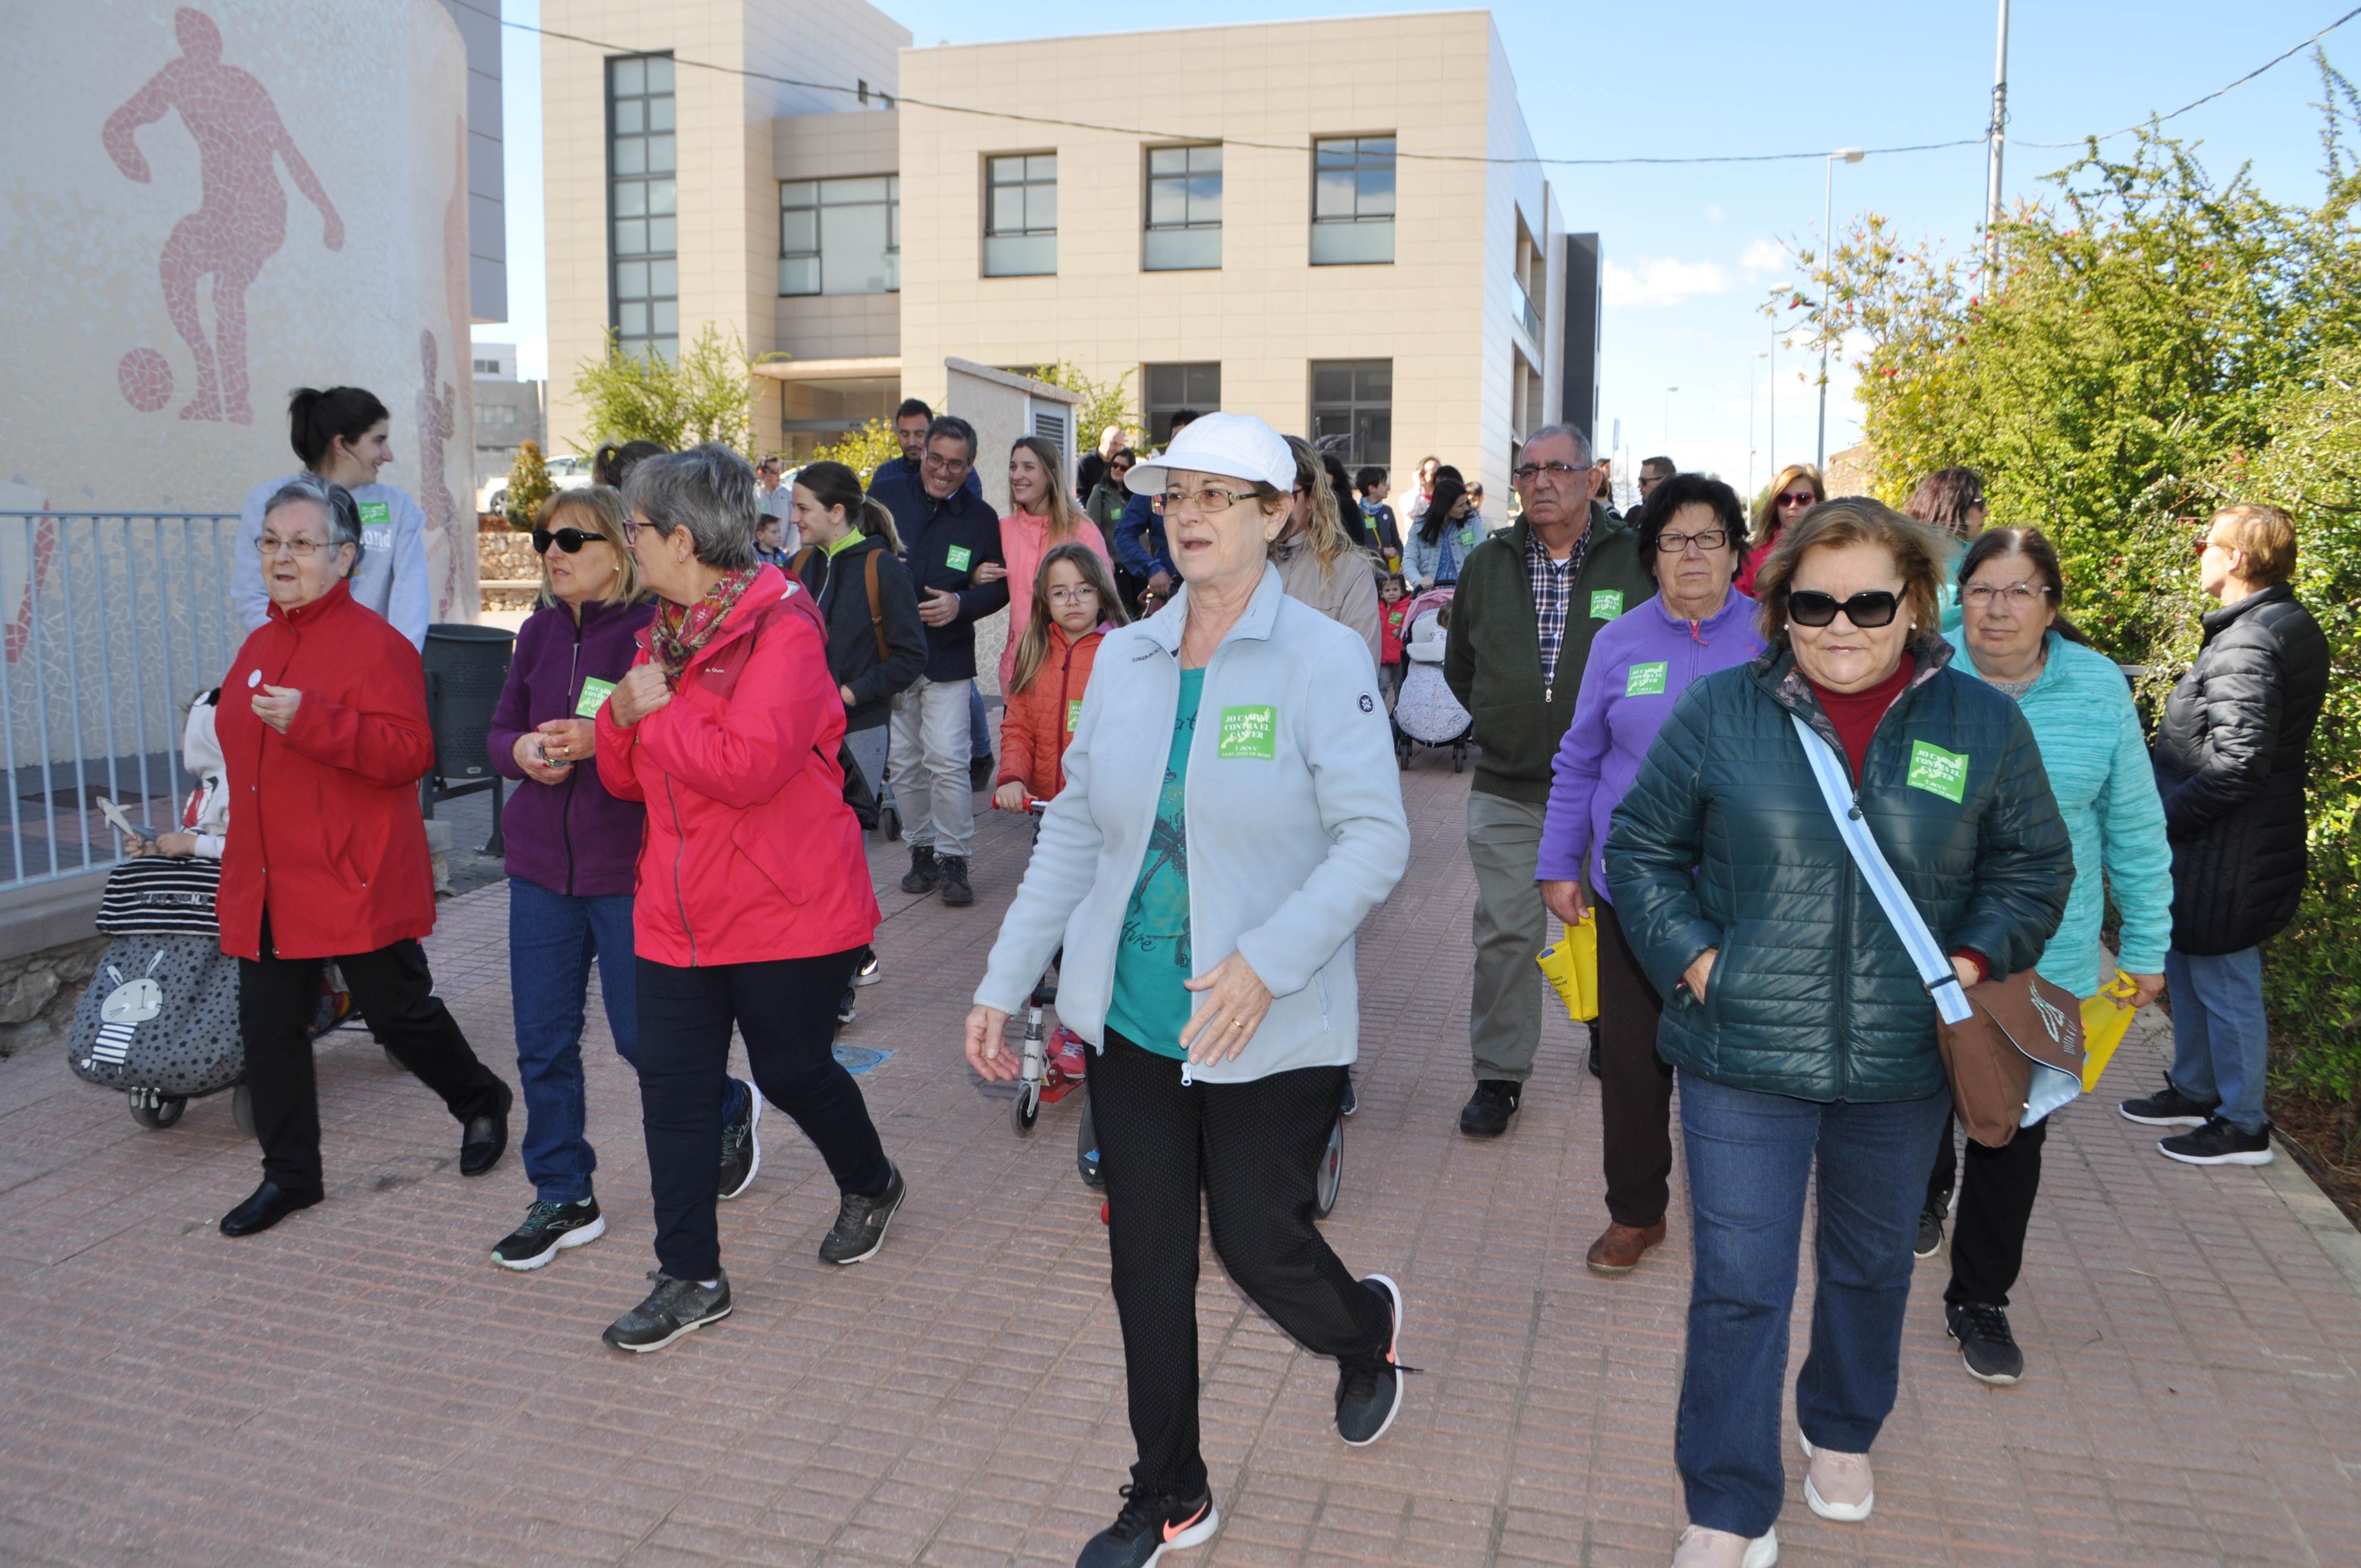 Los moroneros participan masivamente en la caminata anual para recaudar fondos para la lucha contra el cáncer